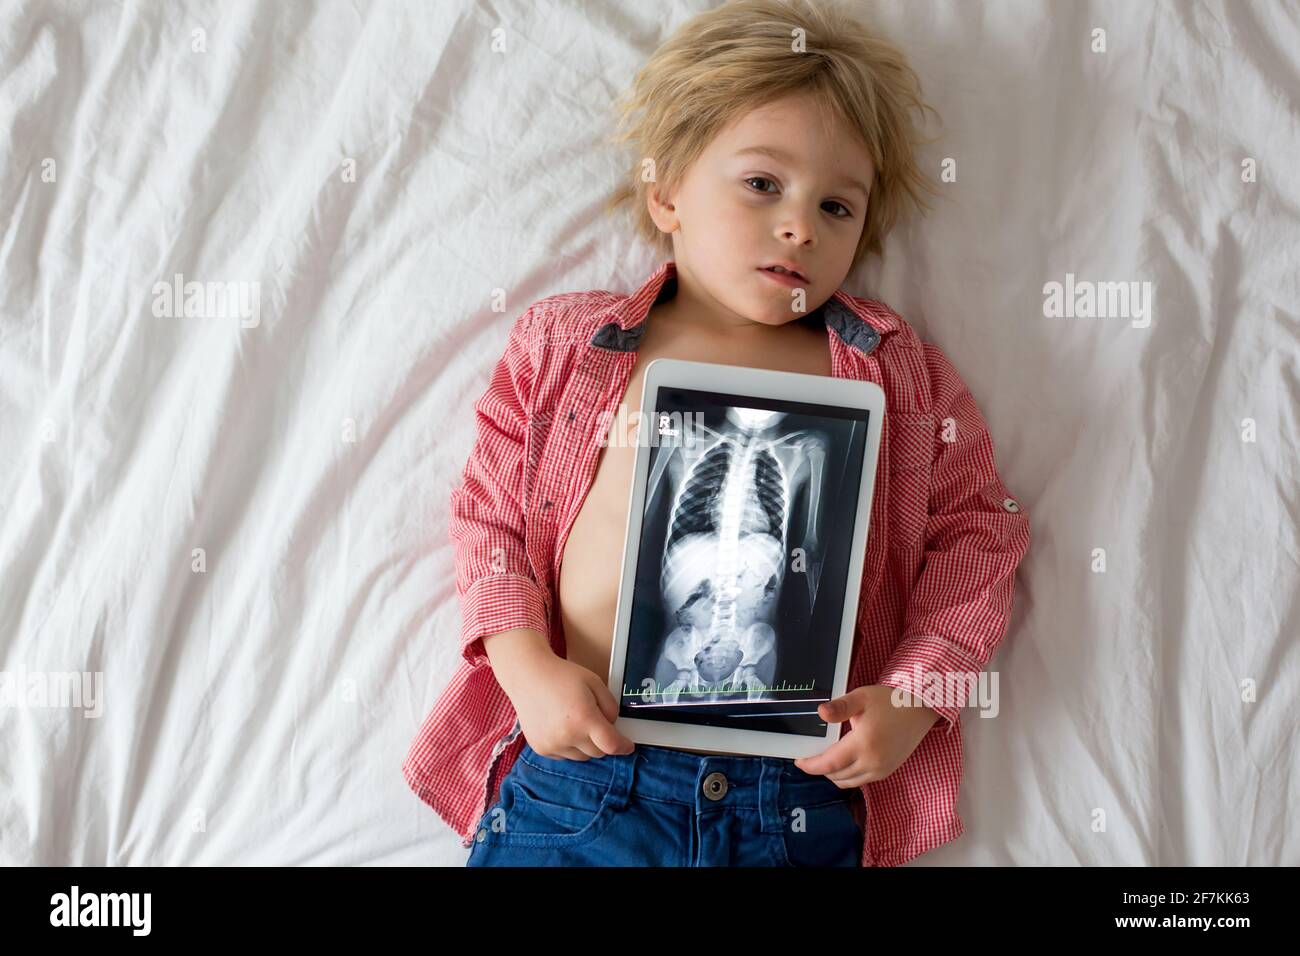 Kleinkind Kind, blonden Jungen, hält Röntgenbild auf Tablette des  Kinderkörpers mit geschluckten Magneten zeigt, Kind schlucken gefährlichen  Gegenstand Stockfotografie - Alamy